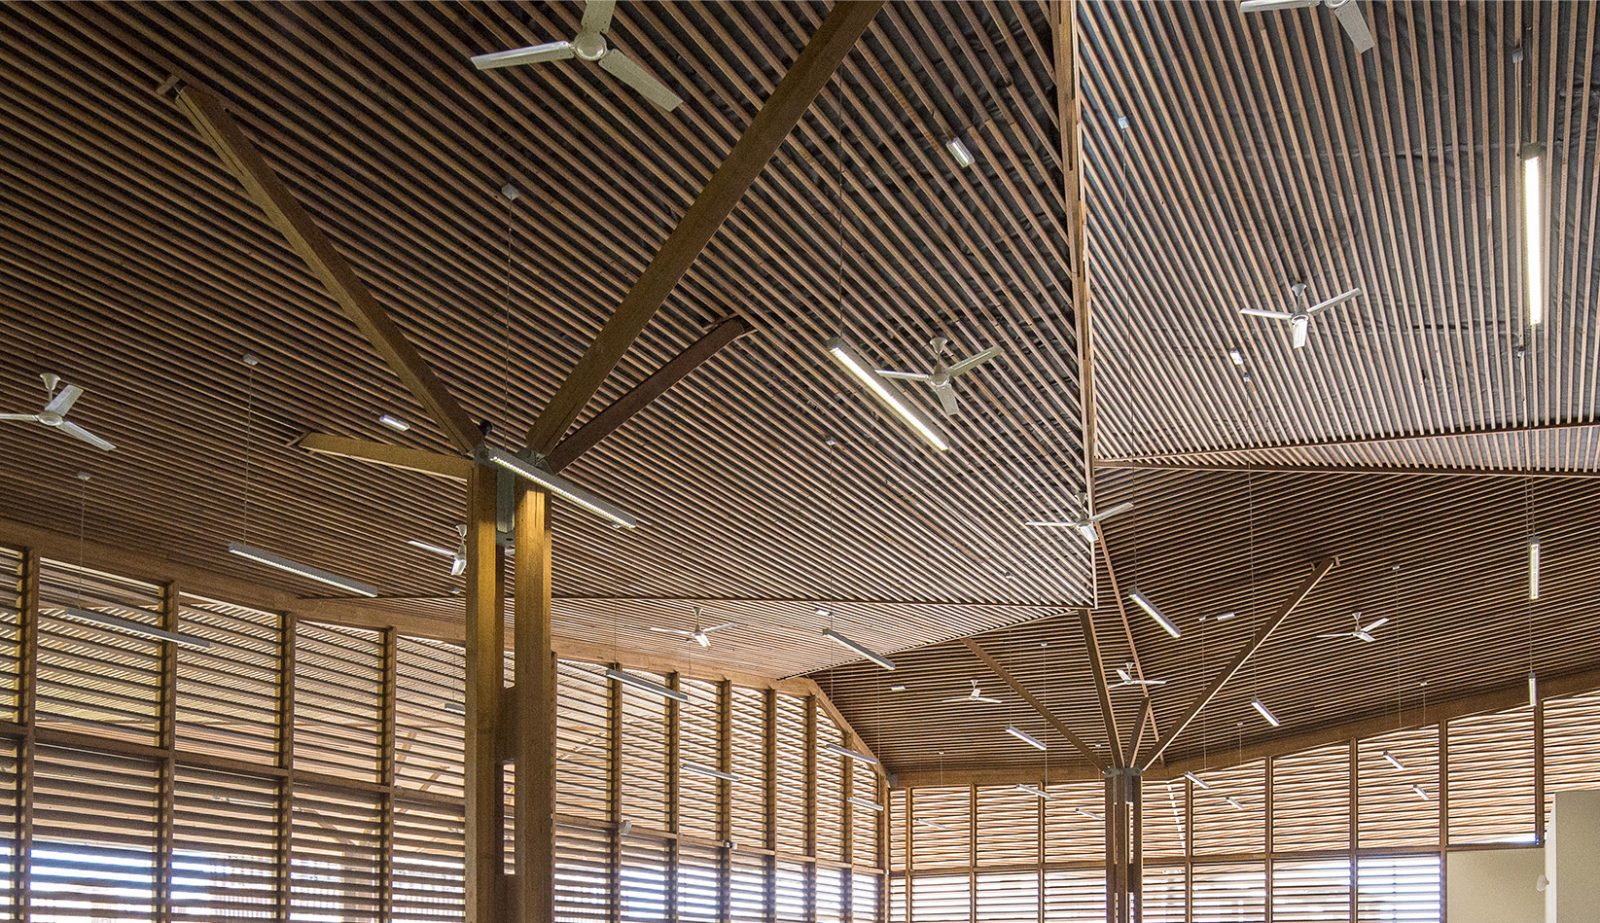 Photographie du plafond en facette style origami avec des lamelles de bois avec différentes orientation par face, poteaux bois qui se divise en étoile et ouverture extérieure tamisé par des lames bois horizontales tout hauteur